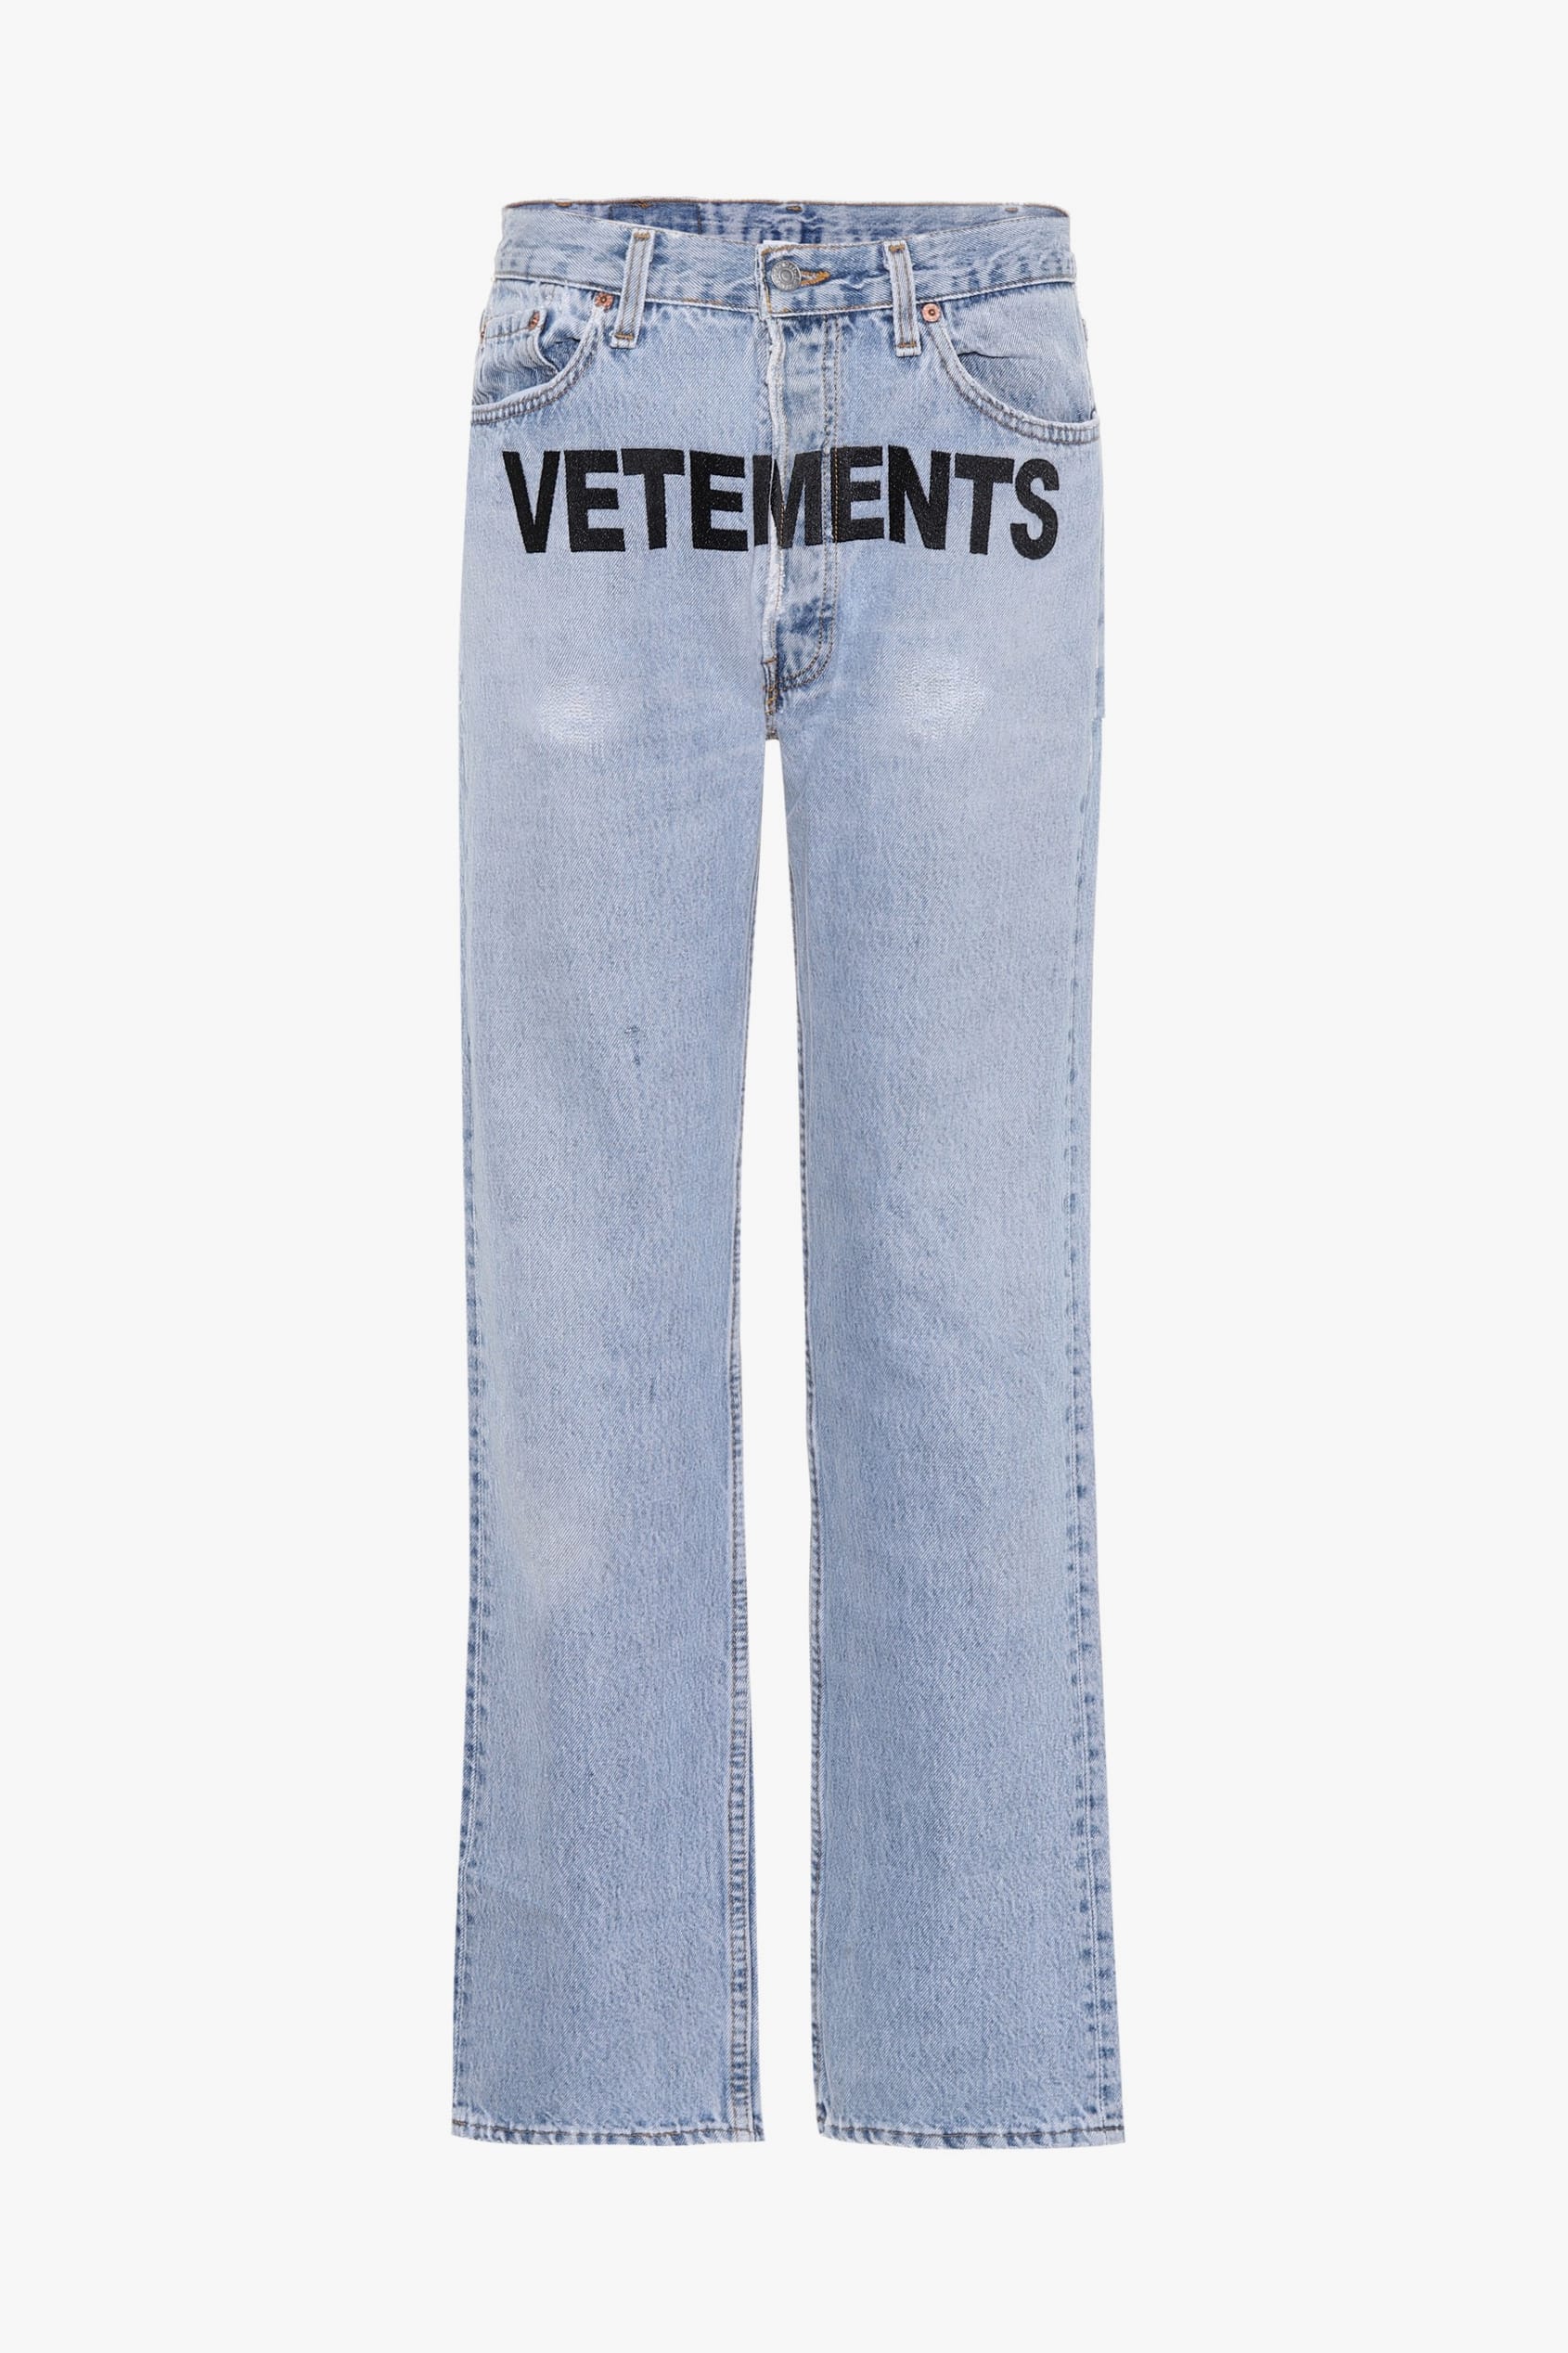 Levi's x Vetements Statement Jeans 